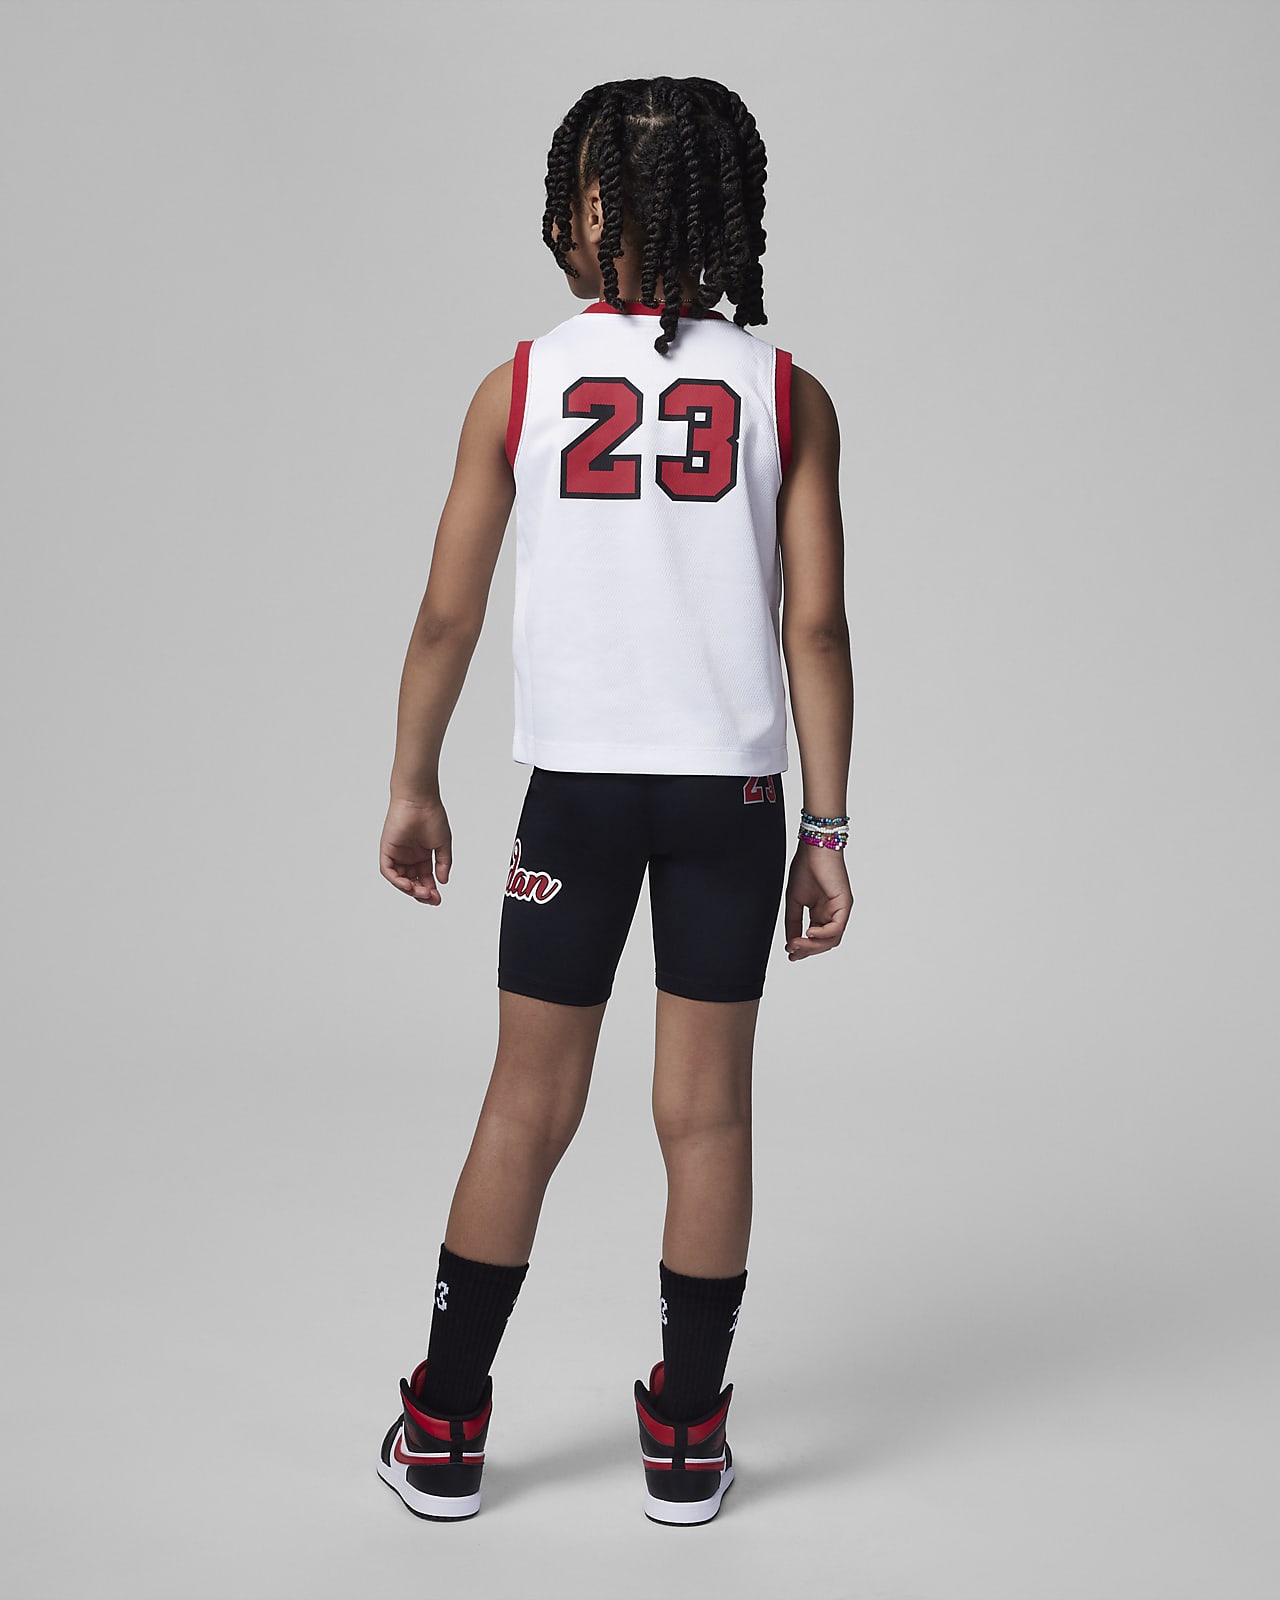 Survêtement Jordan 23 jersey enfant noir